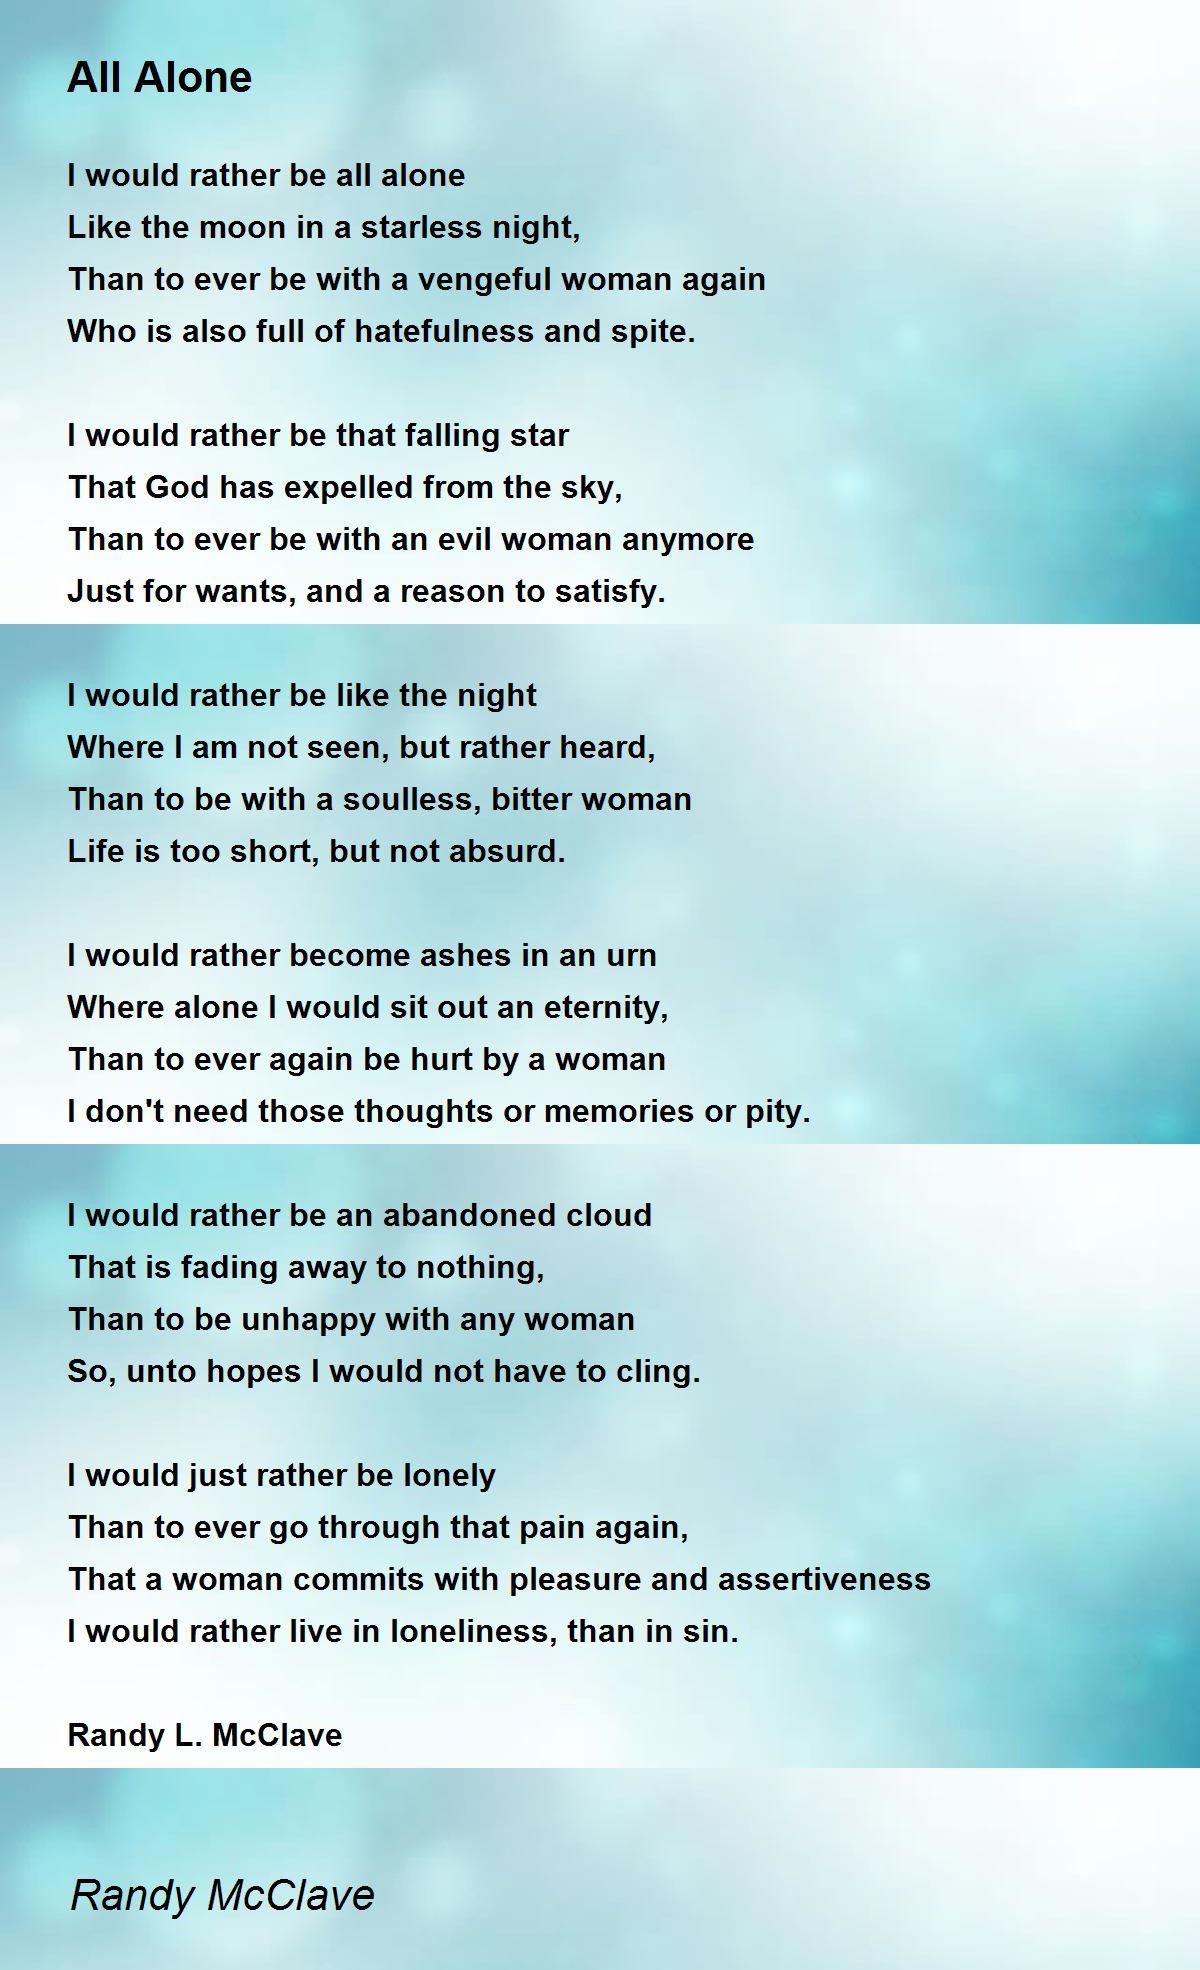 Alone (Lyrics) - Alone (Lyrics) Poem by Sharon 333